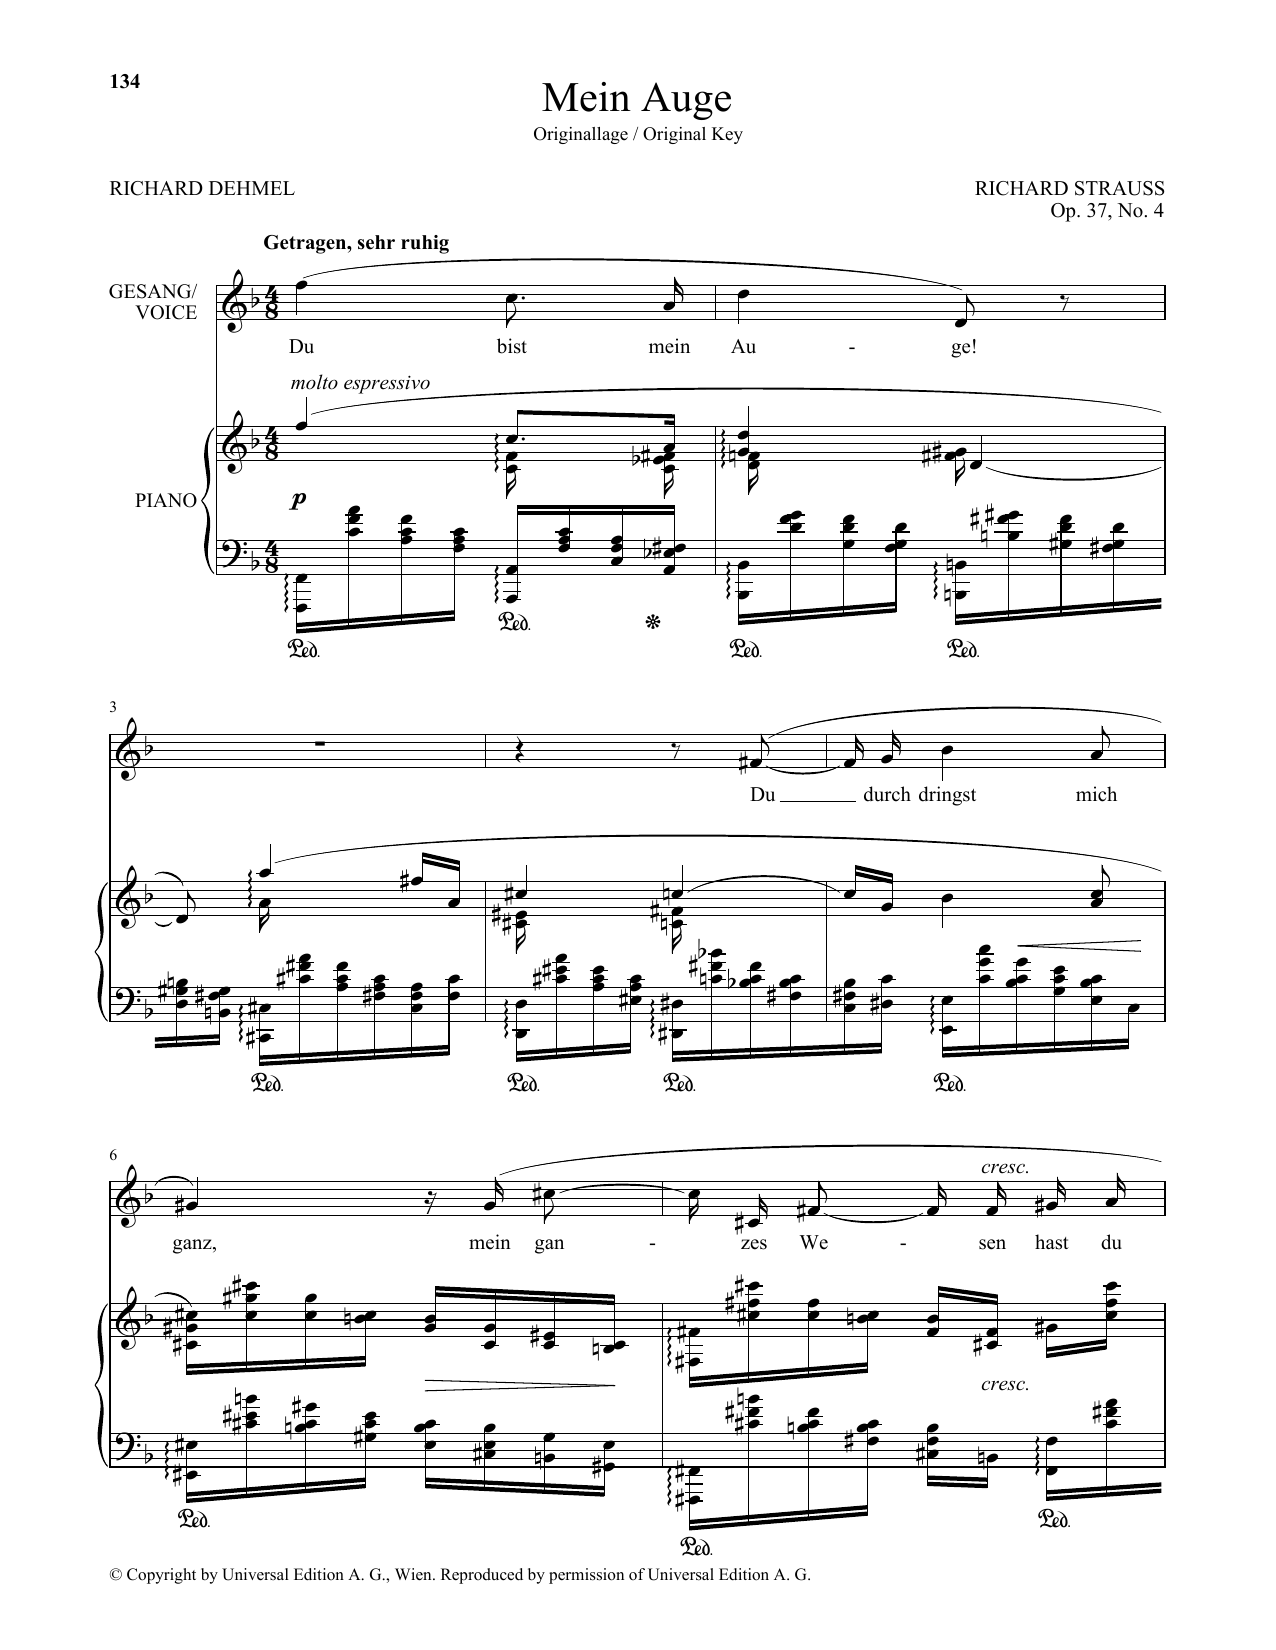 Download Richard Strauss Mein Auge (High Voice) Sheet Music